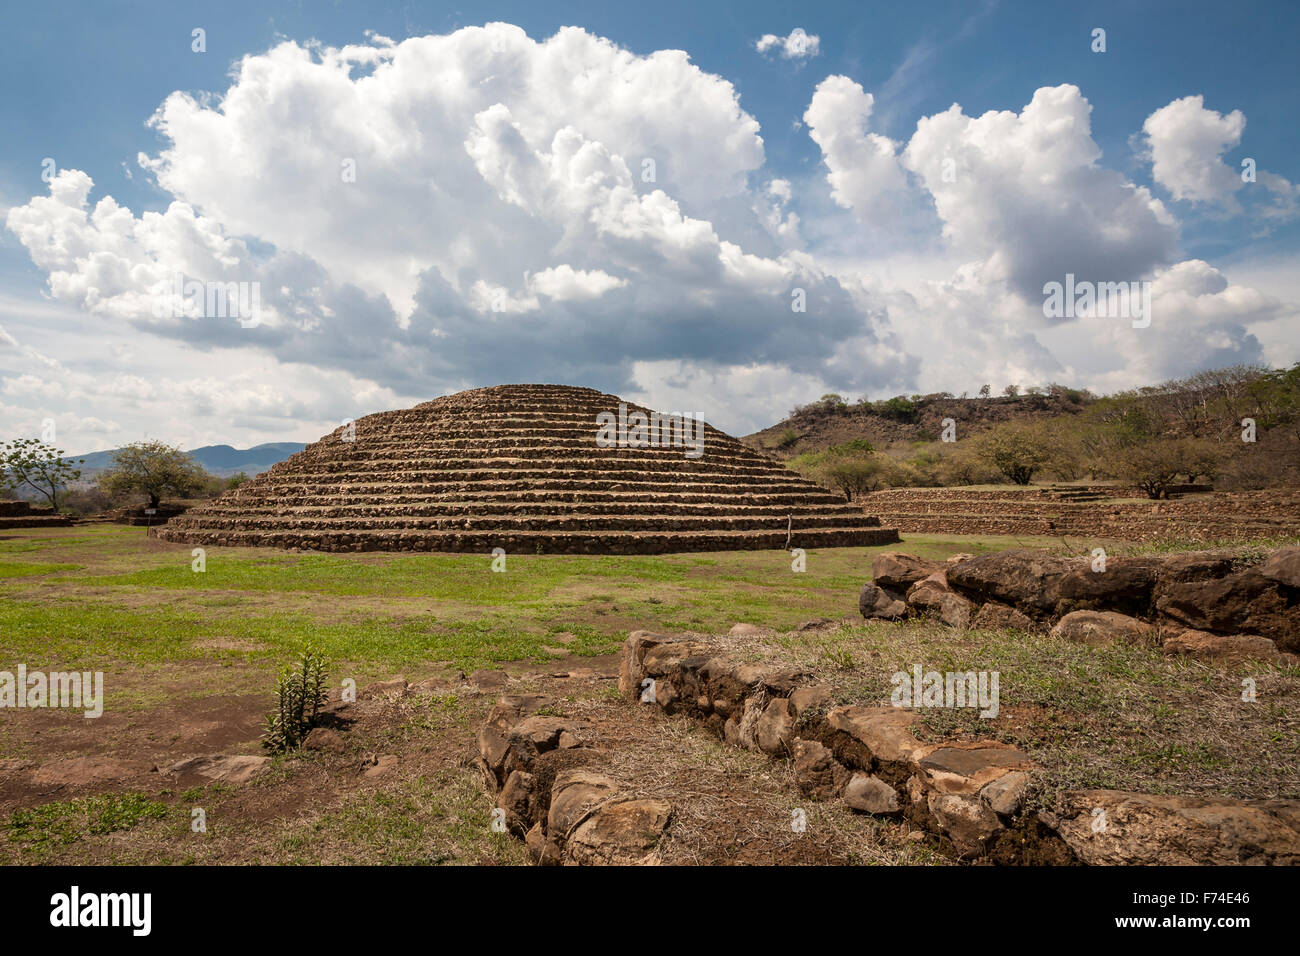 Le site précolombien Guachimontones avec sa pyramide circulaire unique près de la ville de Teuchitlan, Jalisco, Mexique. Banque D'Images